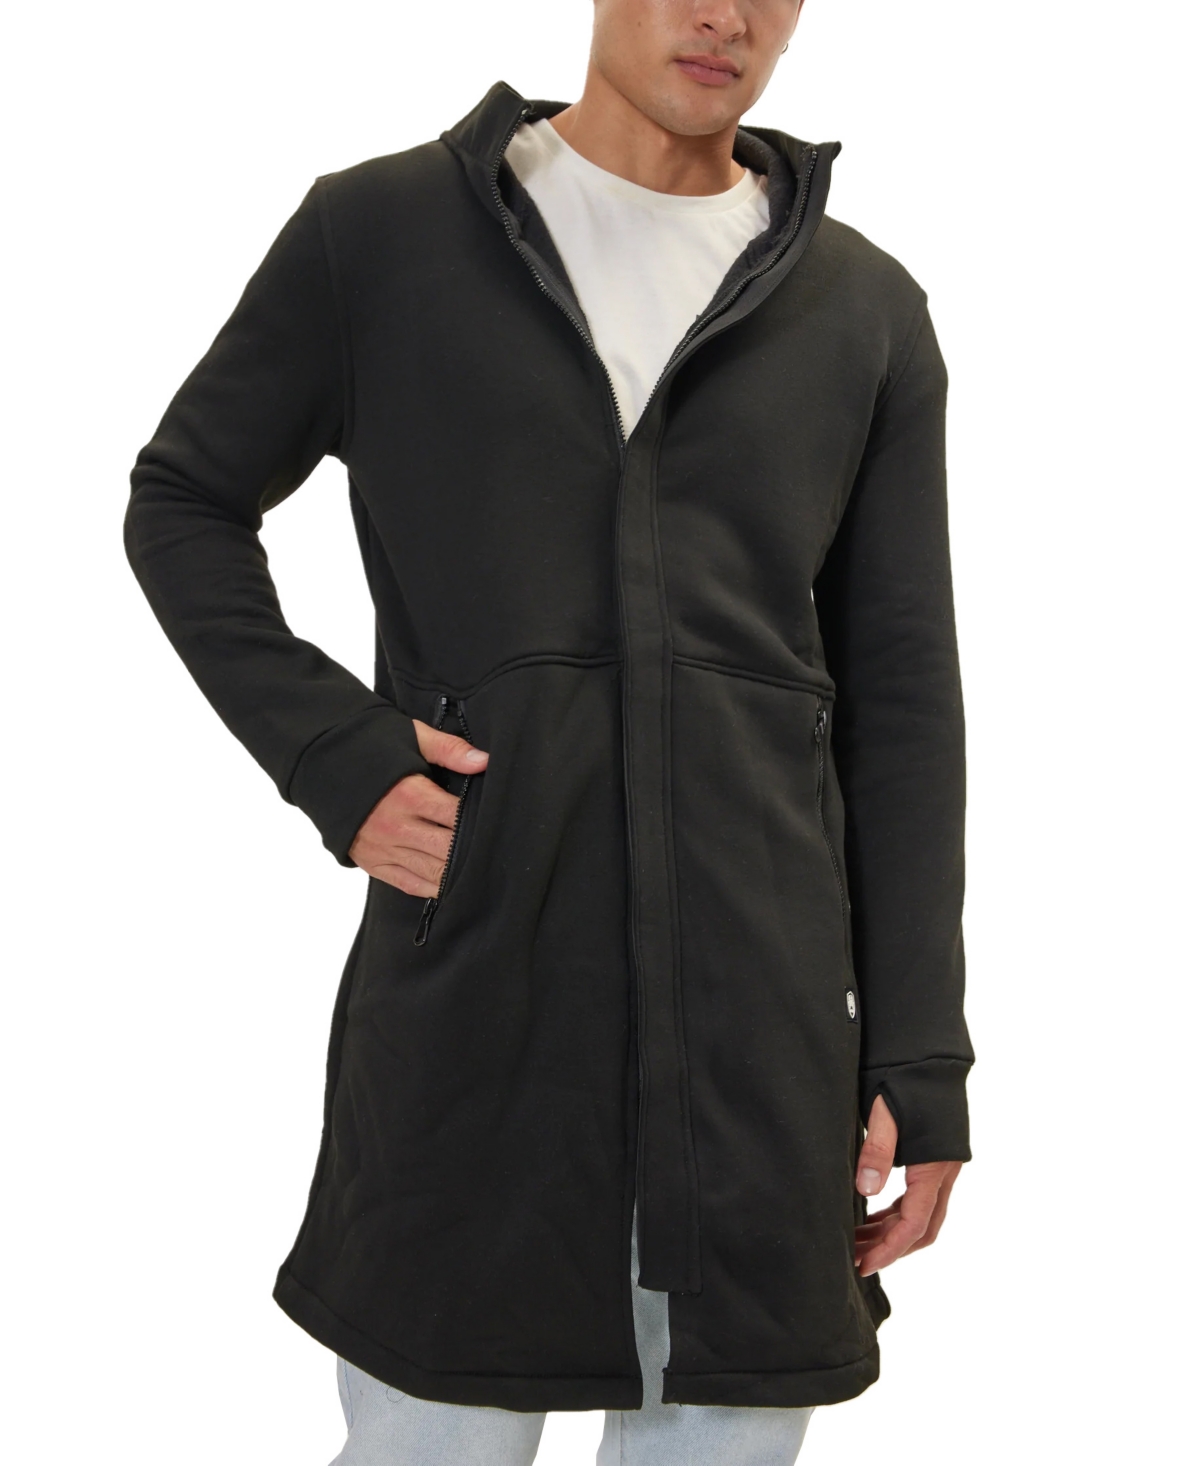 Men's Modern Hooded Longline Jacket - Black